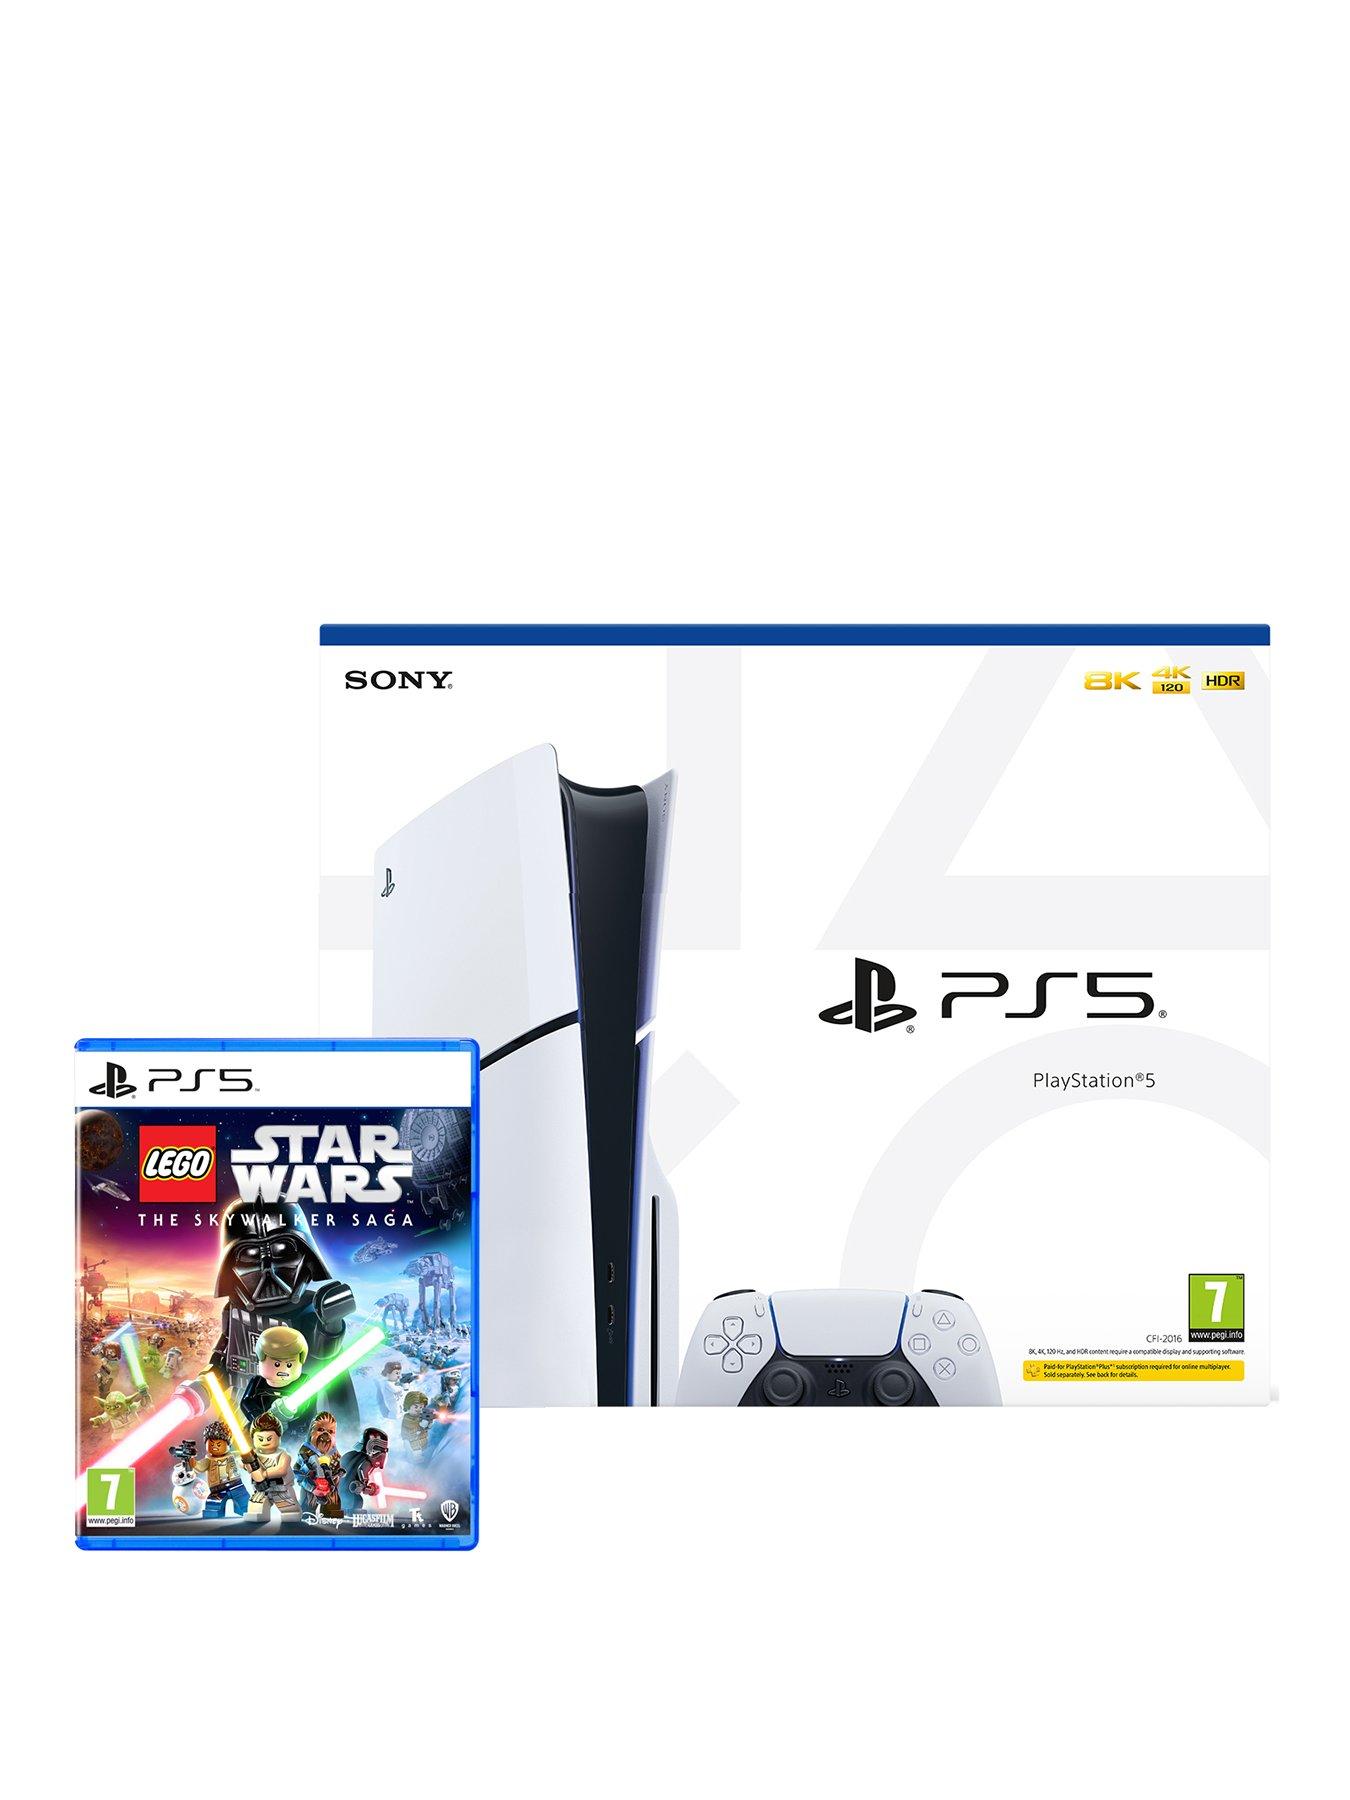 Consola Playstation 5 Sony Slim Standard 1tb